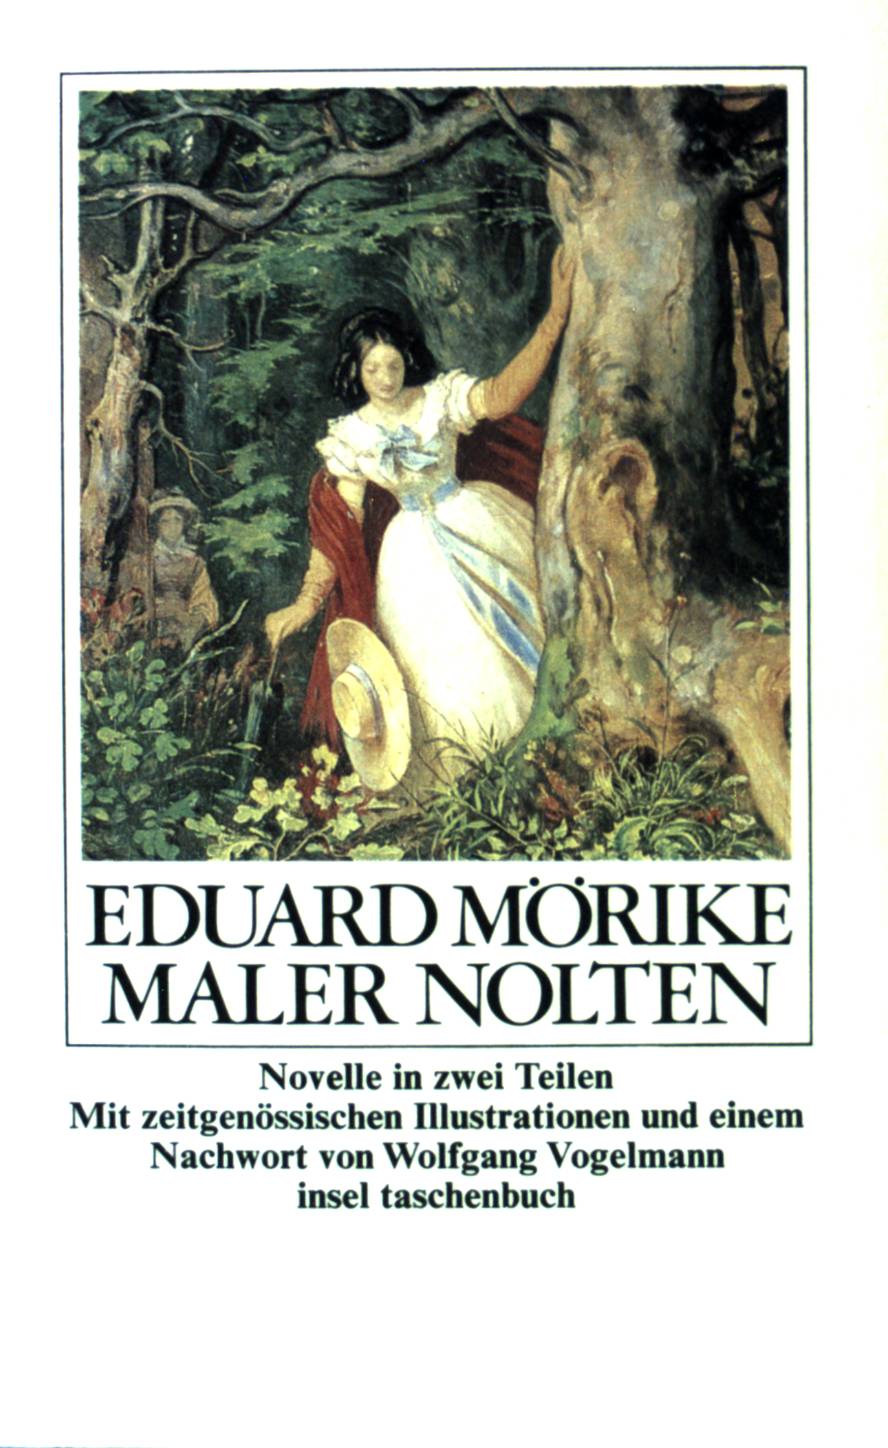 Maler Nolten : Novelle in 2 Teilen. Mit zeitgenöss. Ill. u.e. Nachw. von Wolfgang Vogelmann / Insel-Taschenbuch ; (Nr 404) - Mörike, Eduard